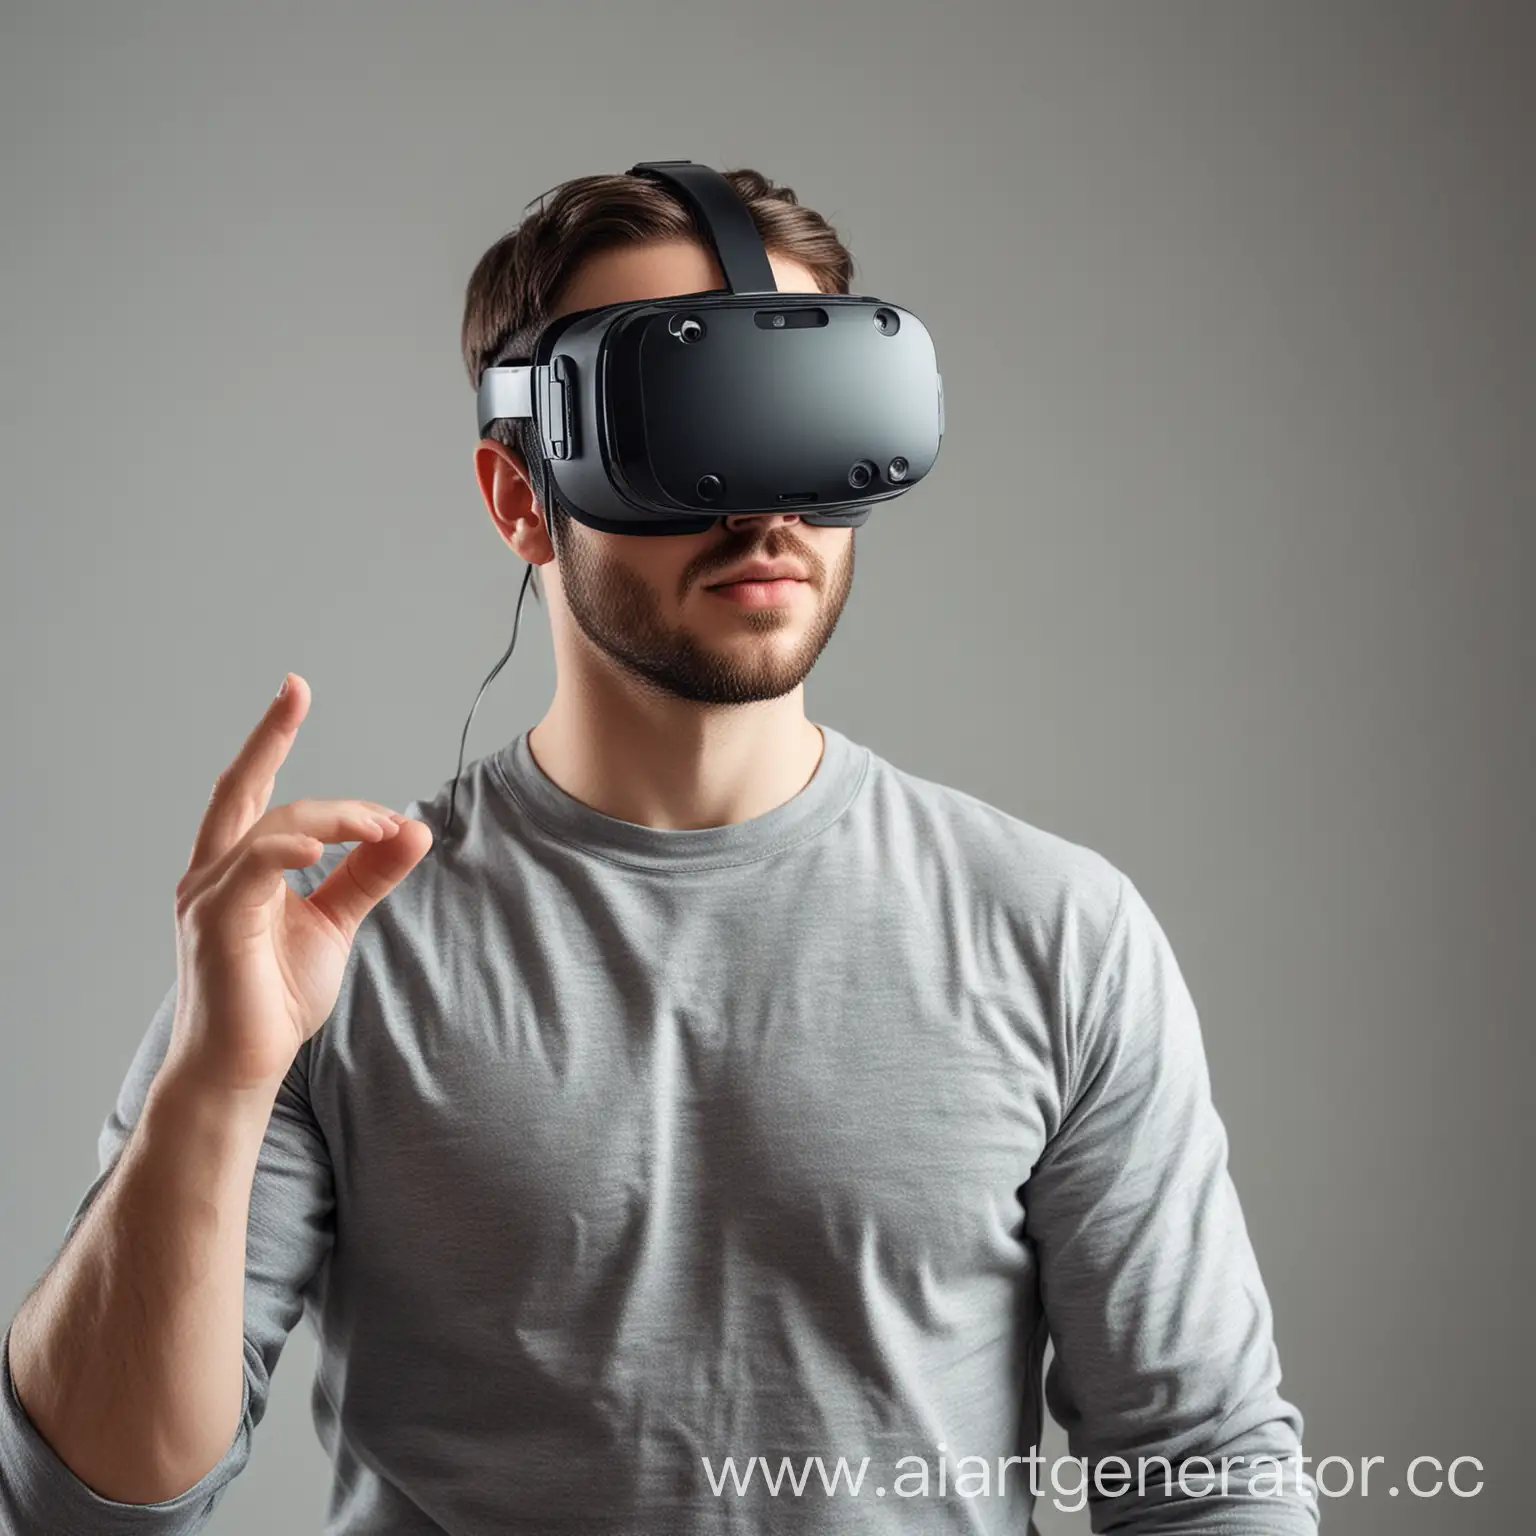 Сгенерируй изображение, где мужчина в VR очках
